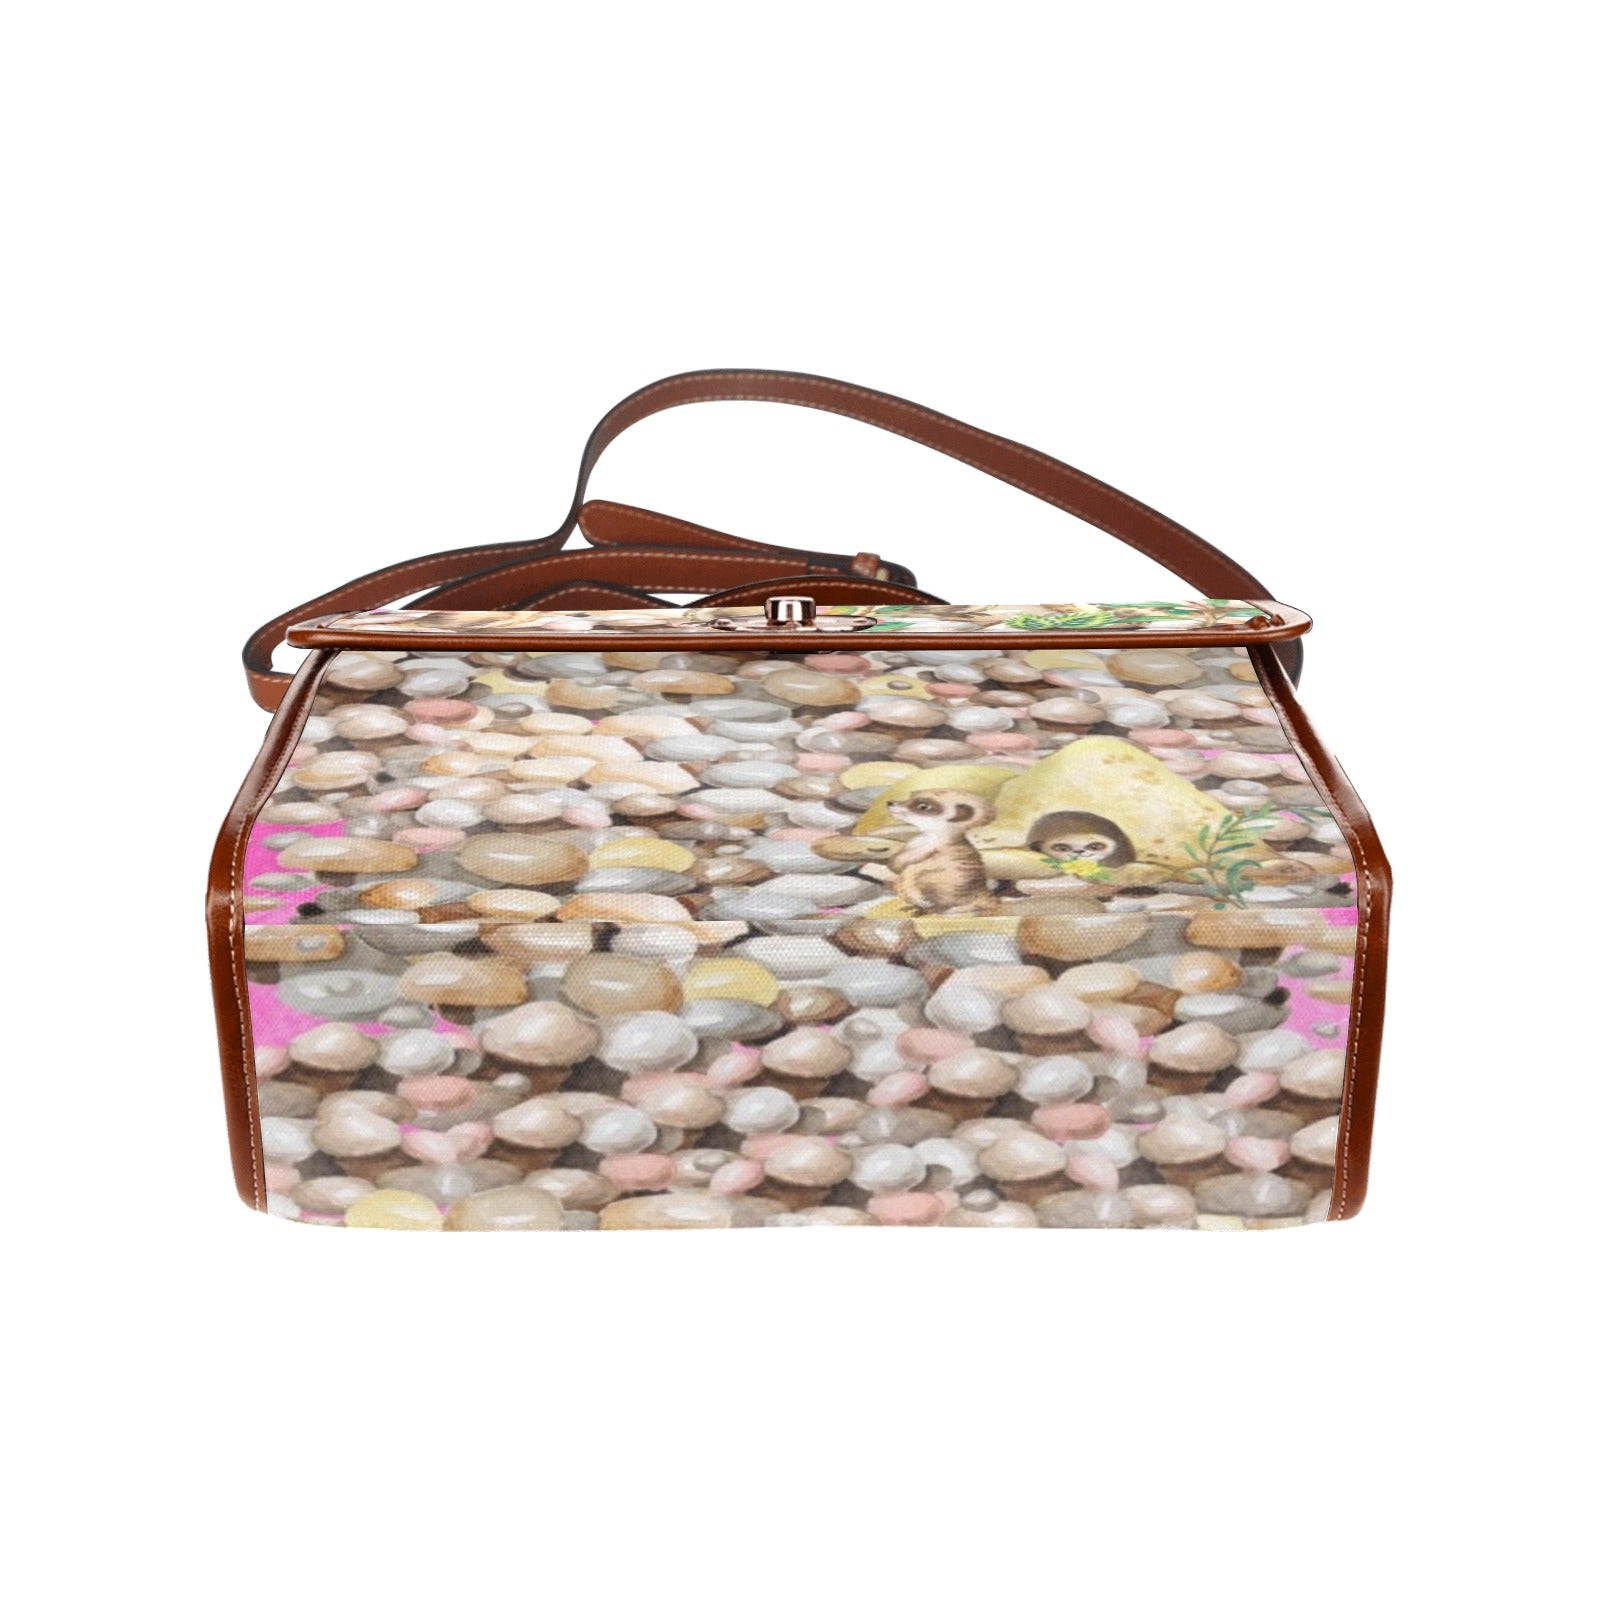 Meerkats - Waterproof Canvas Handbag